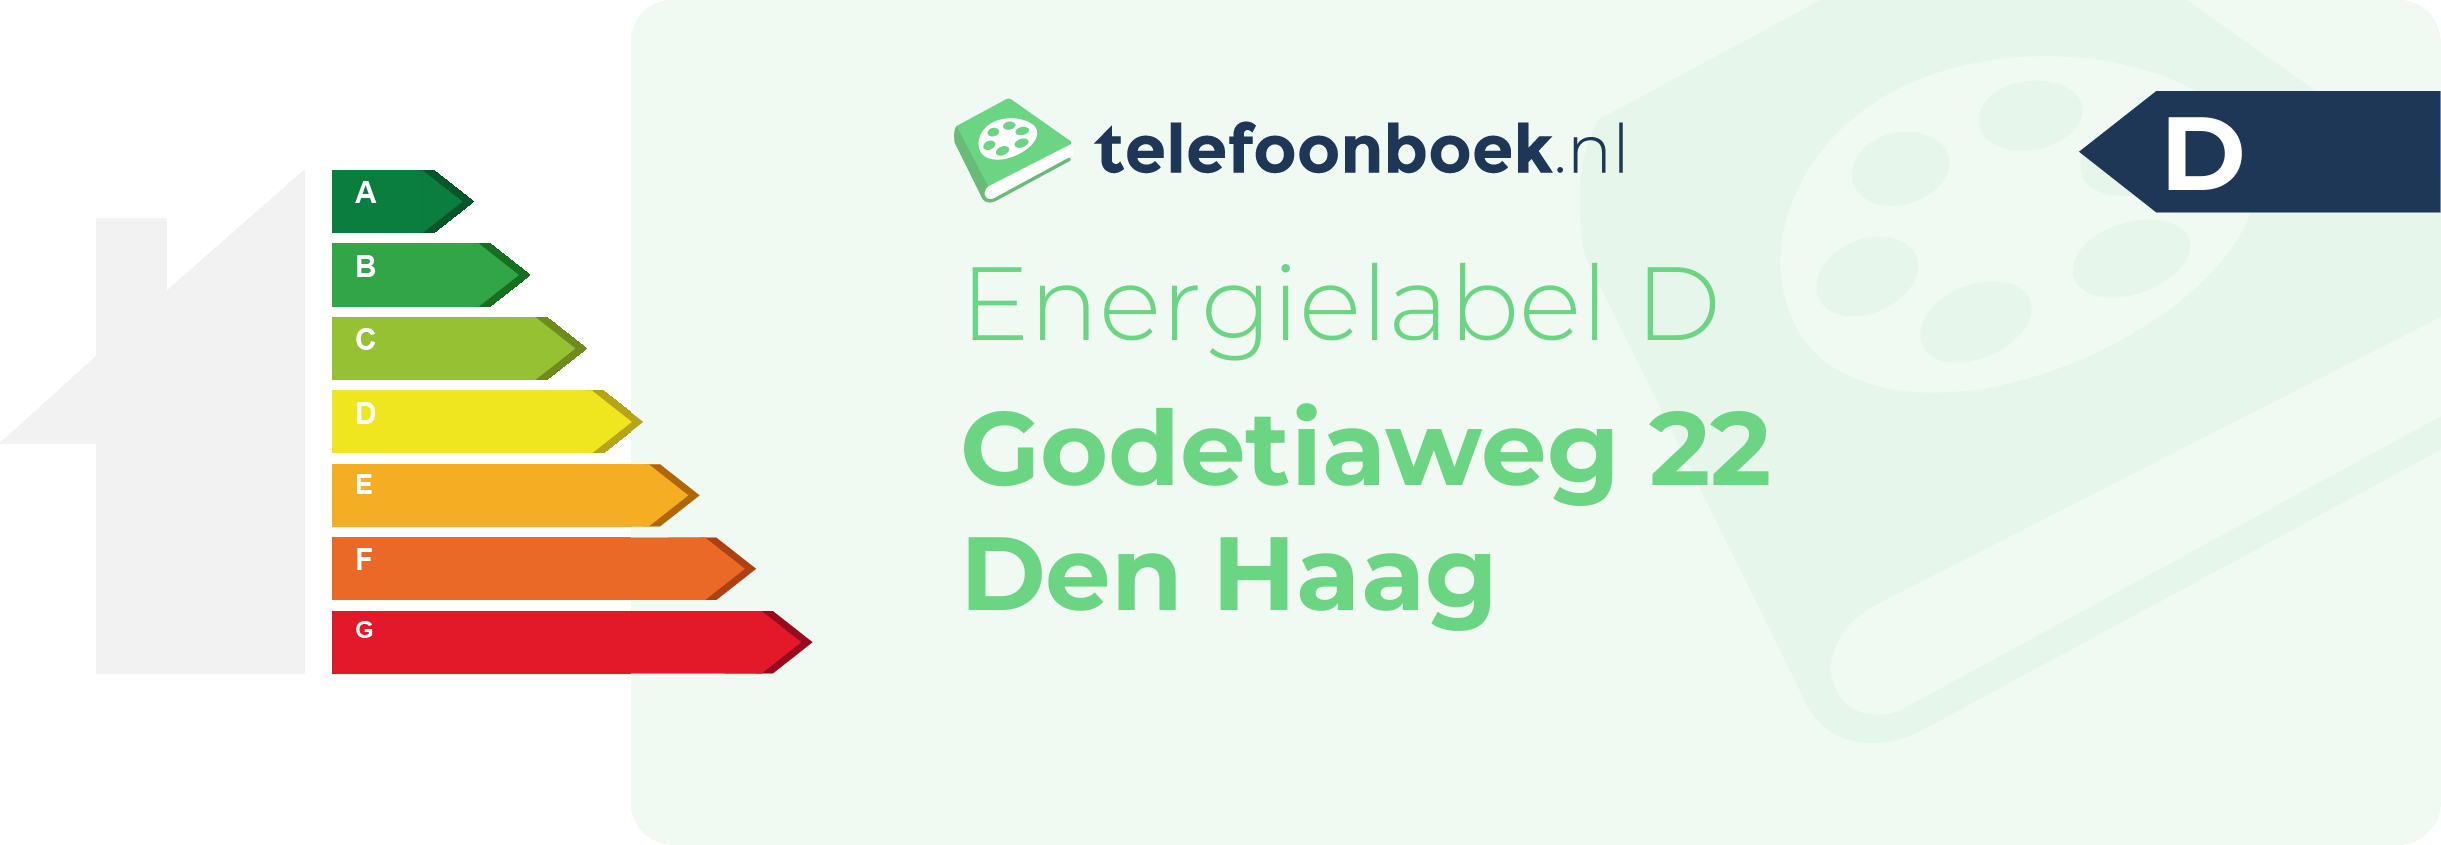 Energielabel Godetiaweg 22 Den Haag